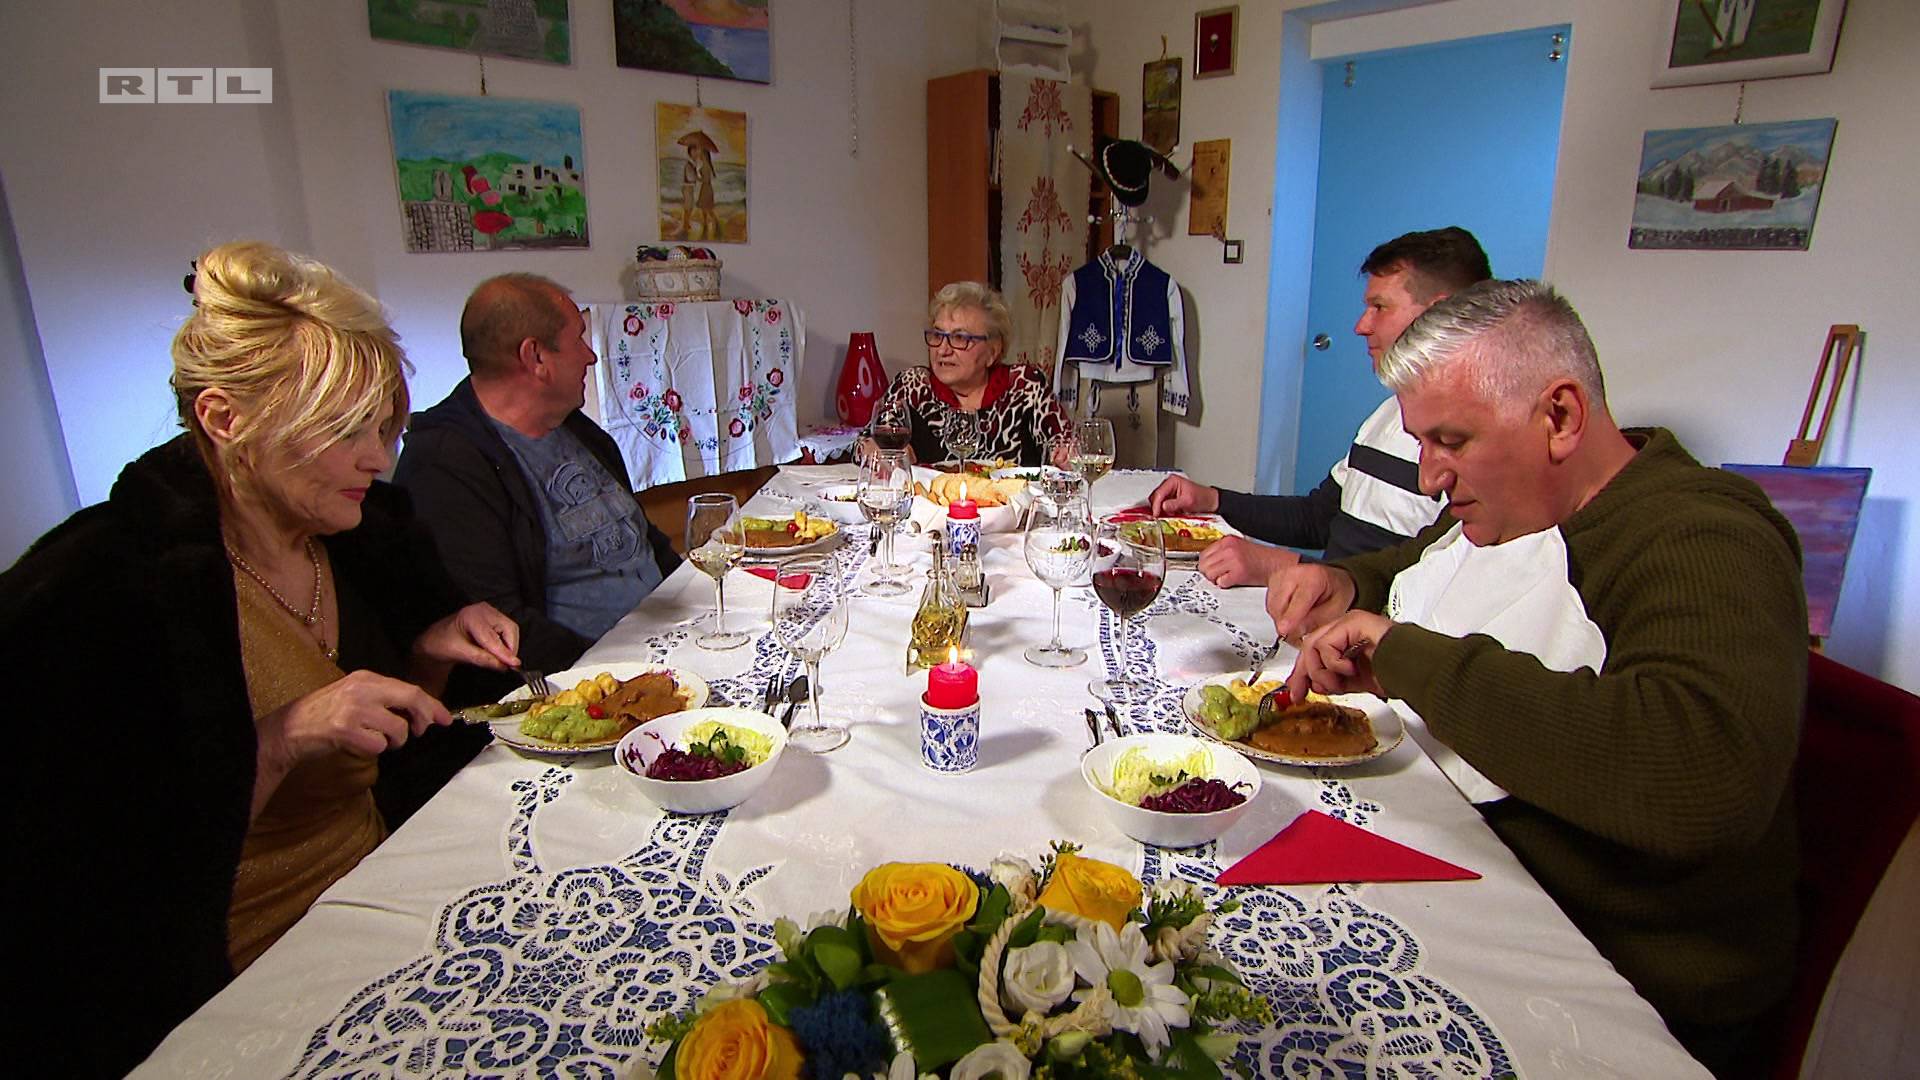 Umirovljenica Marija oduševila je gledatelje: Jedna simpatična gospođa, jela su izgledala super